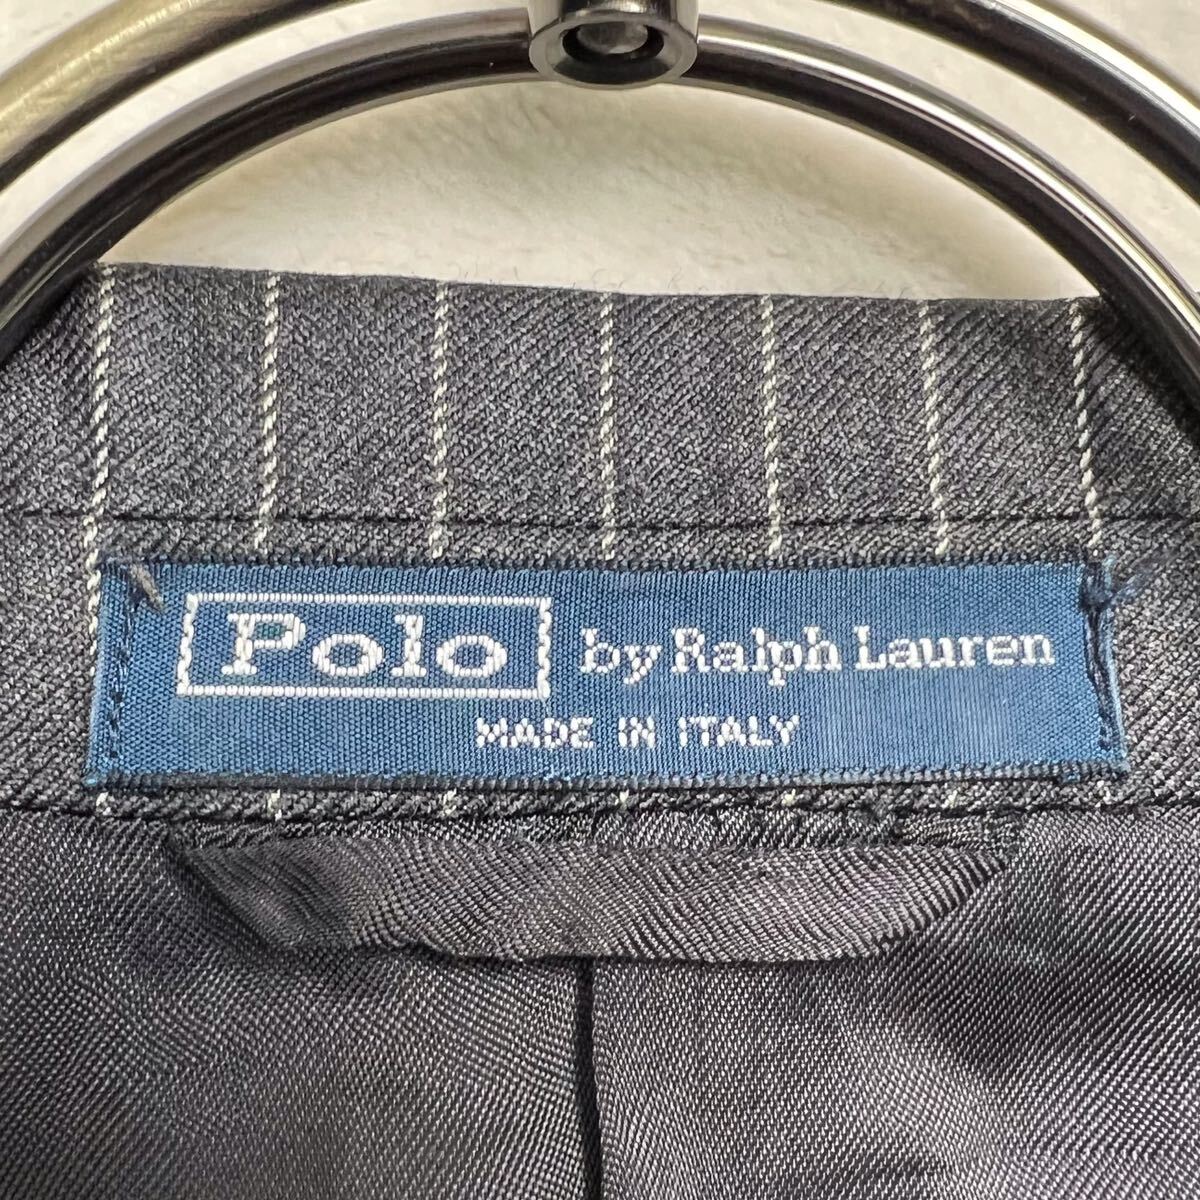  Polo Ralph Lauren (Polo Ralph Lauren) авторучка полоса жакет размер 36 мужской S носорог соответствует угольно-серый 2. кнопка боковой Benz 